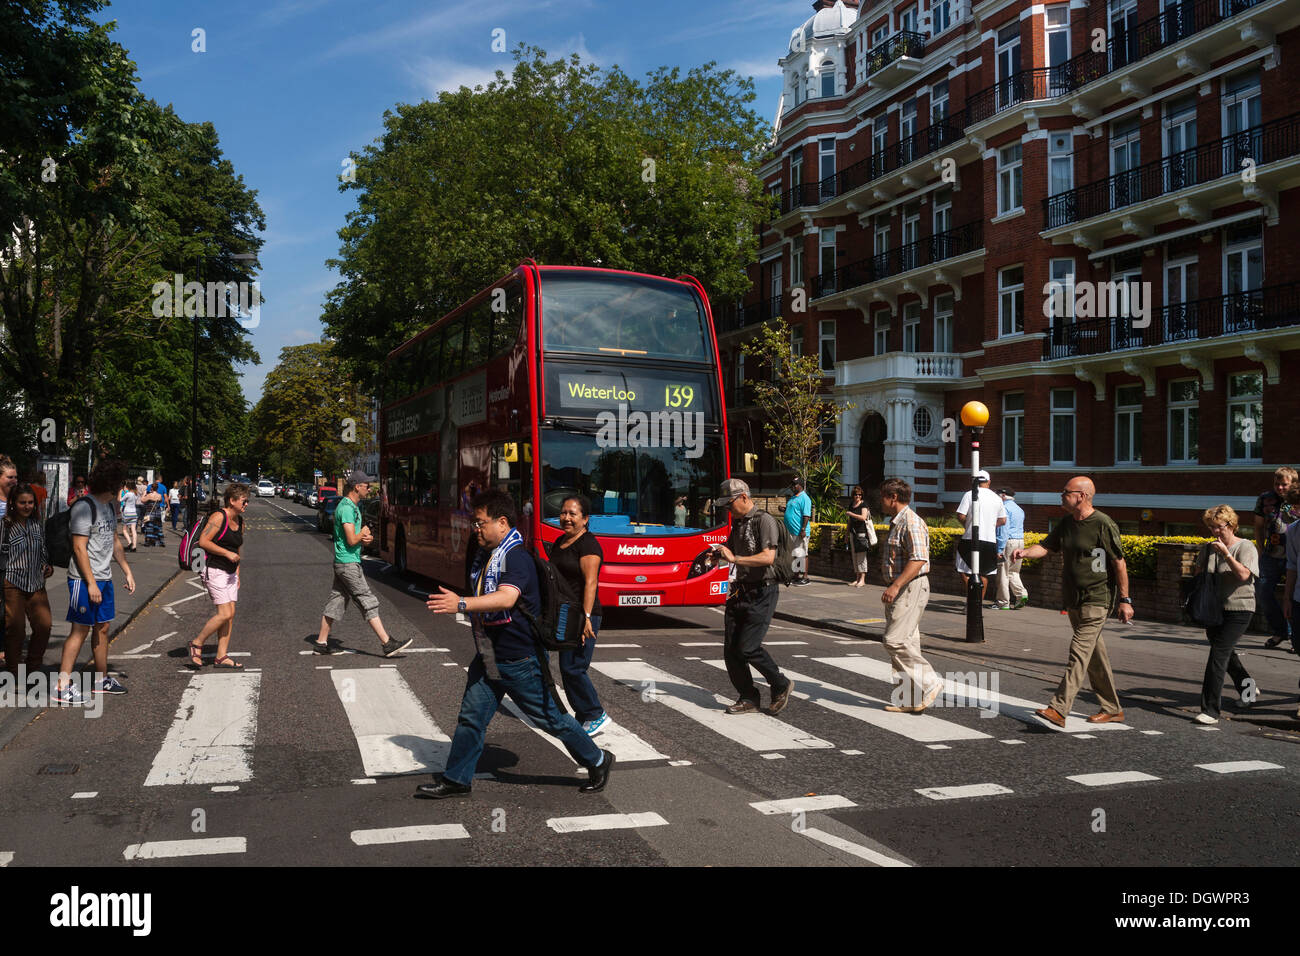 Les touristes sur le passage piétons de la célèbre couverture de l'album des Beatles, Abbey Road, Londres, Angleterre, Royaume-Uni, Europe Banque D'Images